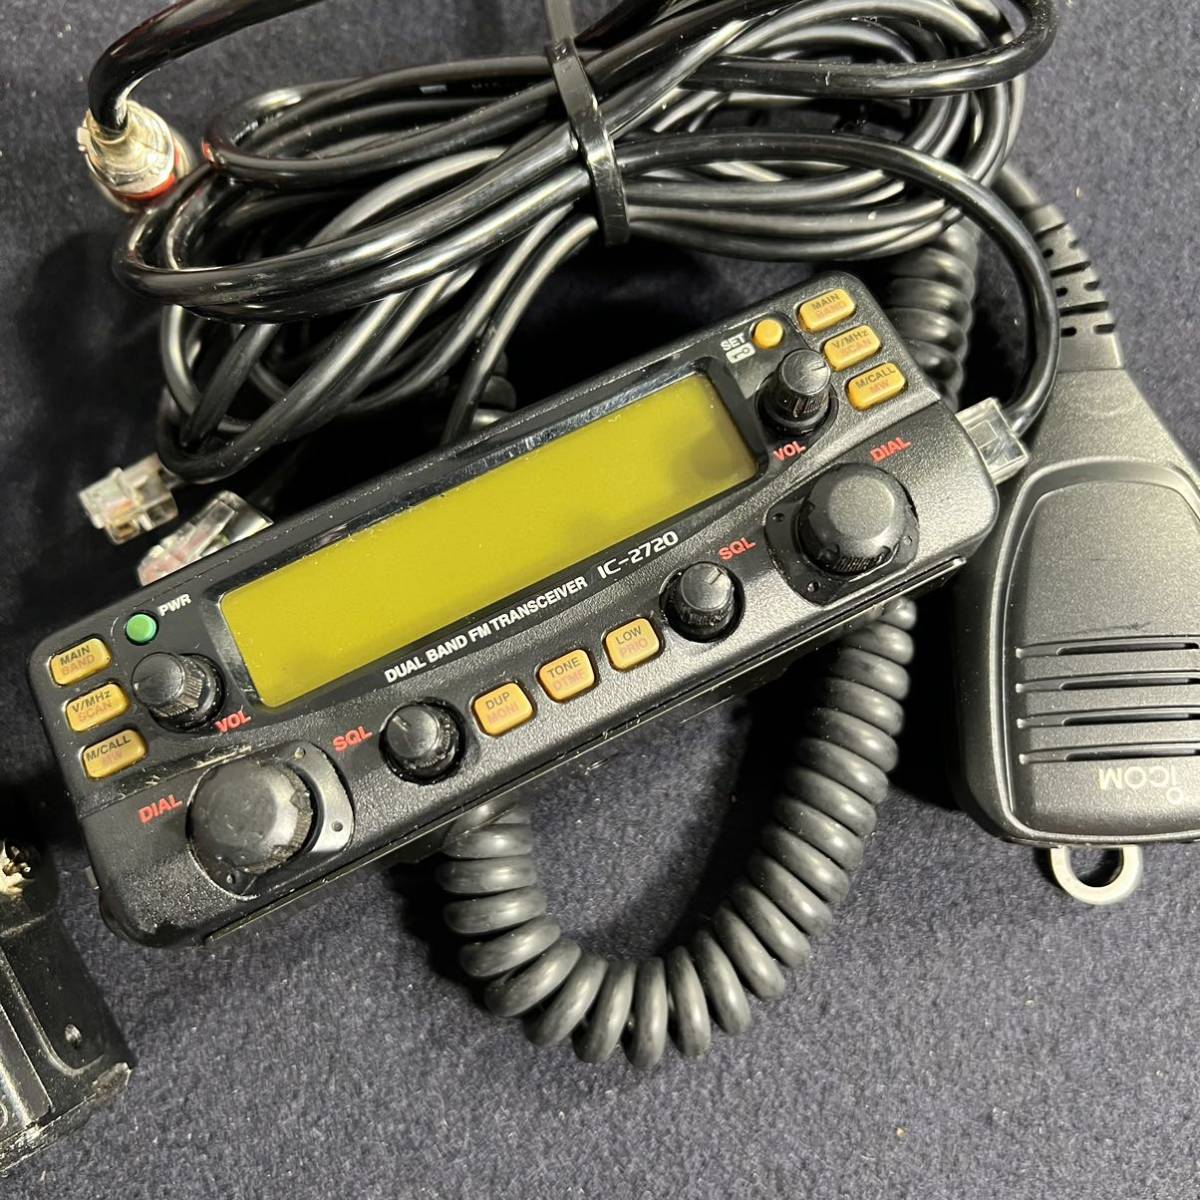 IC-2720アイコム ICOM アマチュア無線機 無線機 【ジャンク品】棚46